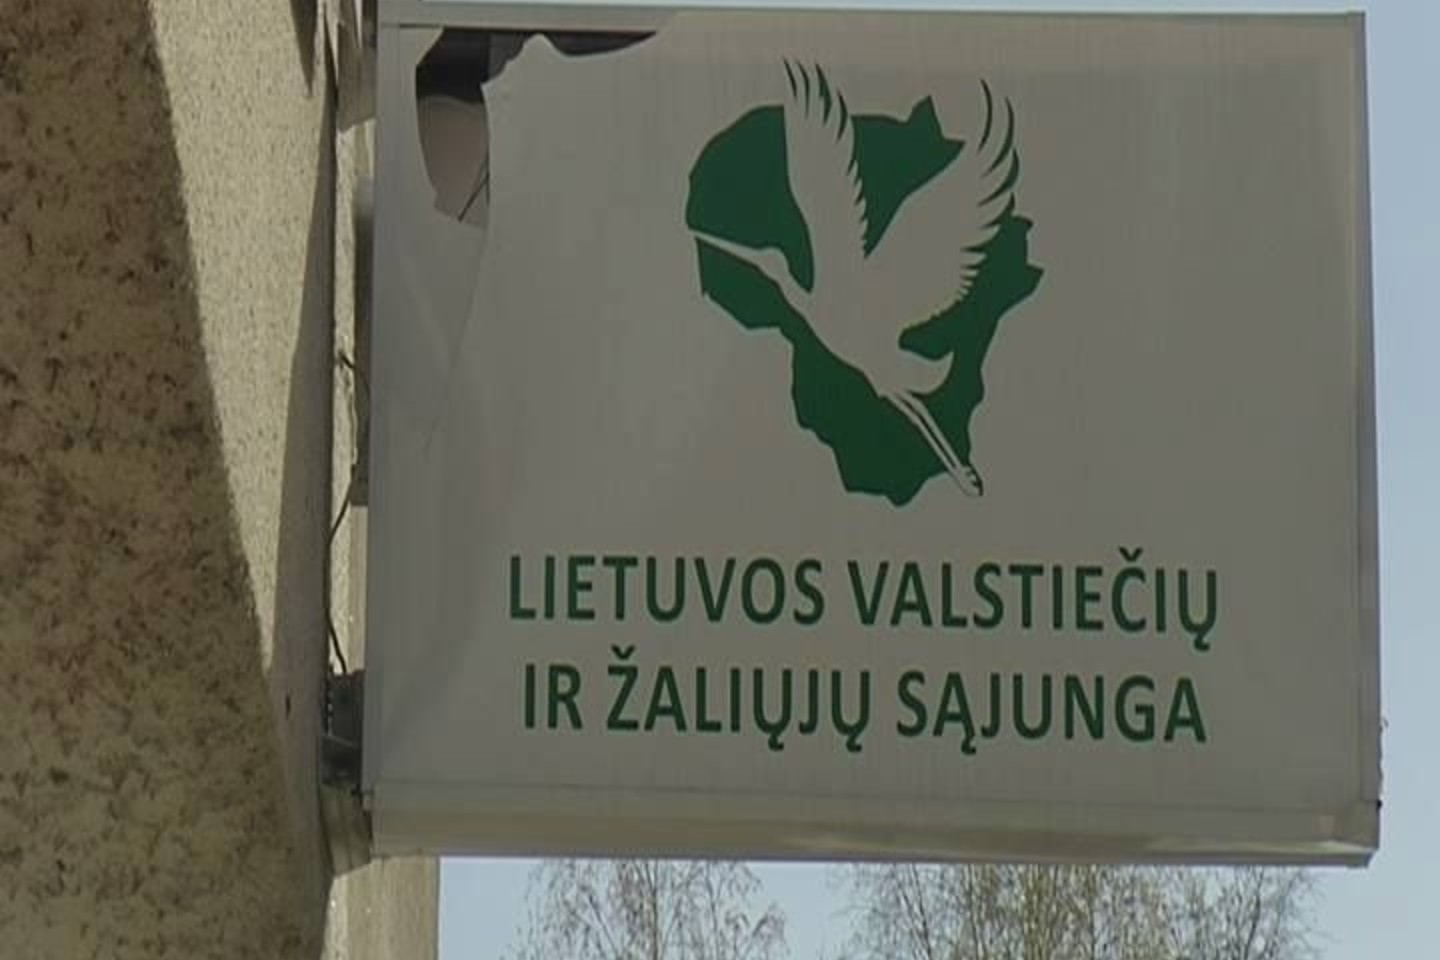 Valstiečių ir žaliųjų sąjungos skyrius Panevėžyje jau antrą kartą uždarytas dėl nesutarimų su G.Kildišiene.